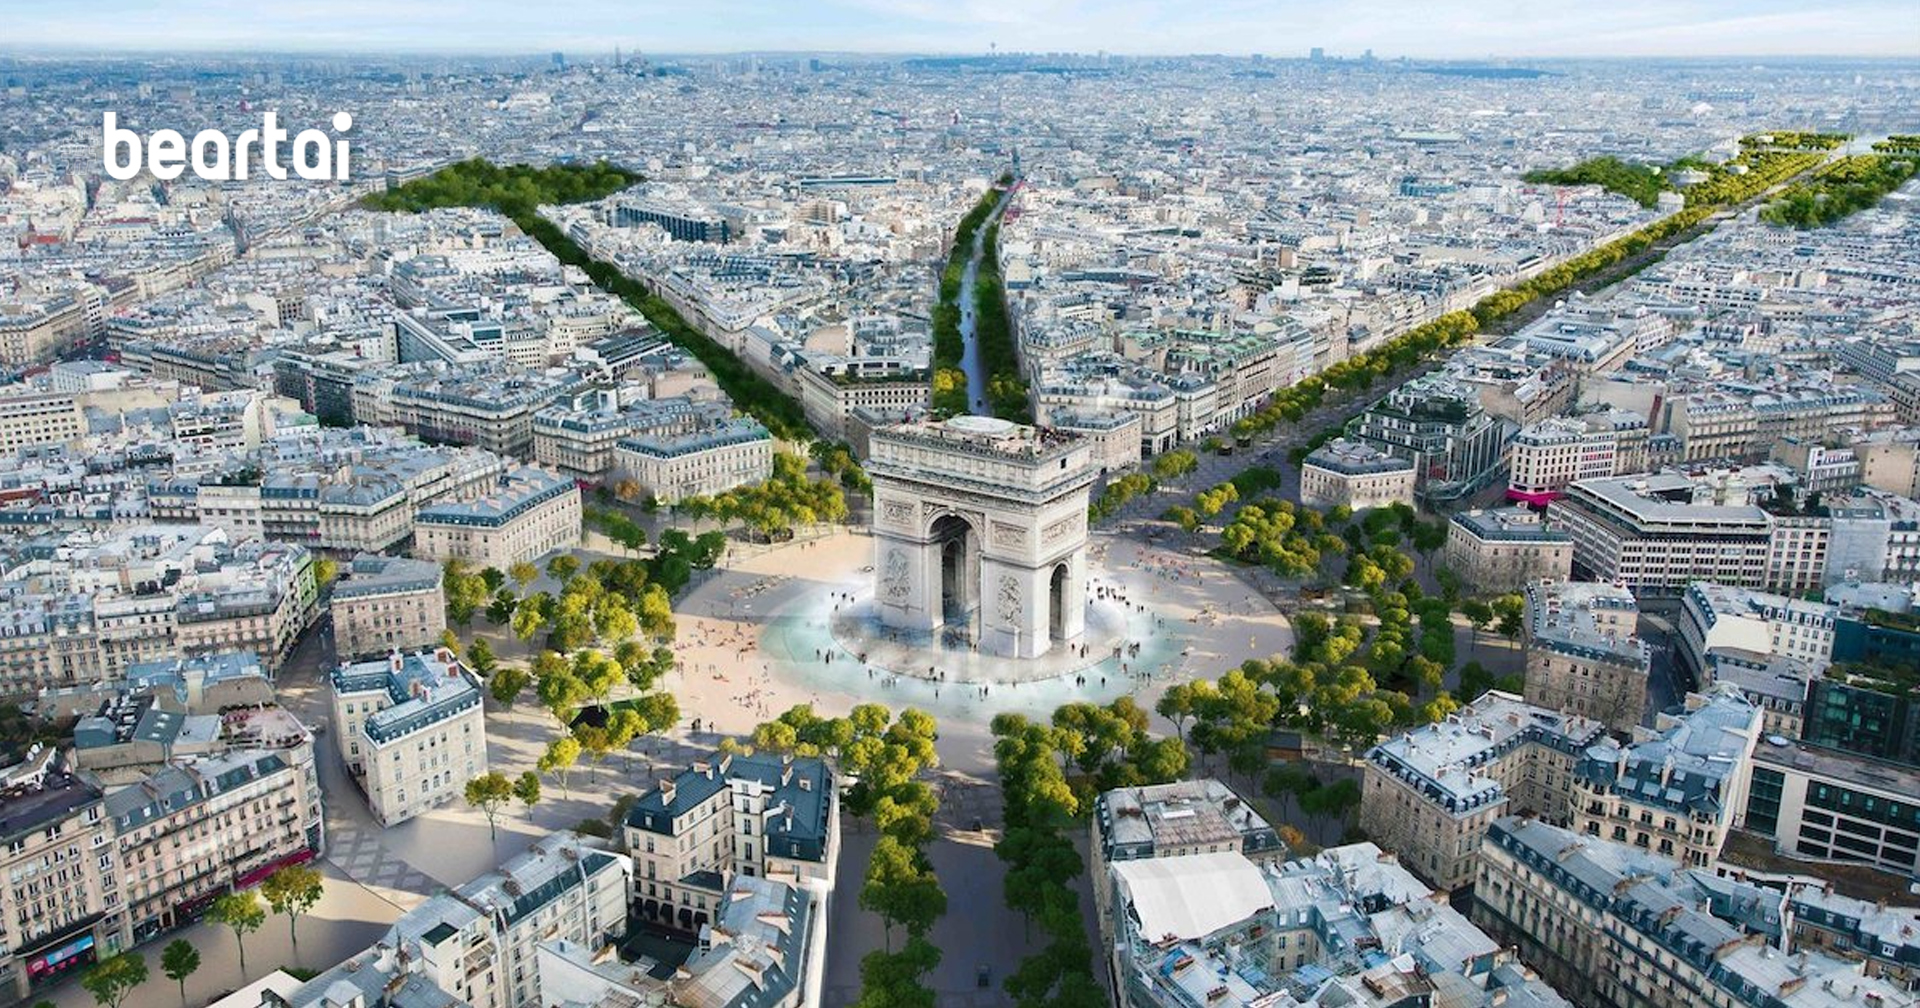 ถนนฌ็องเซลิเซ่ในปารีส จะเอาถนนรถวิ่งออกครึ่งหนึ่ง เพิ่มเป็นถนนคนเดินและสร้างอุโมงค์ต้นไม้